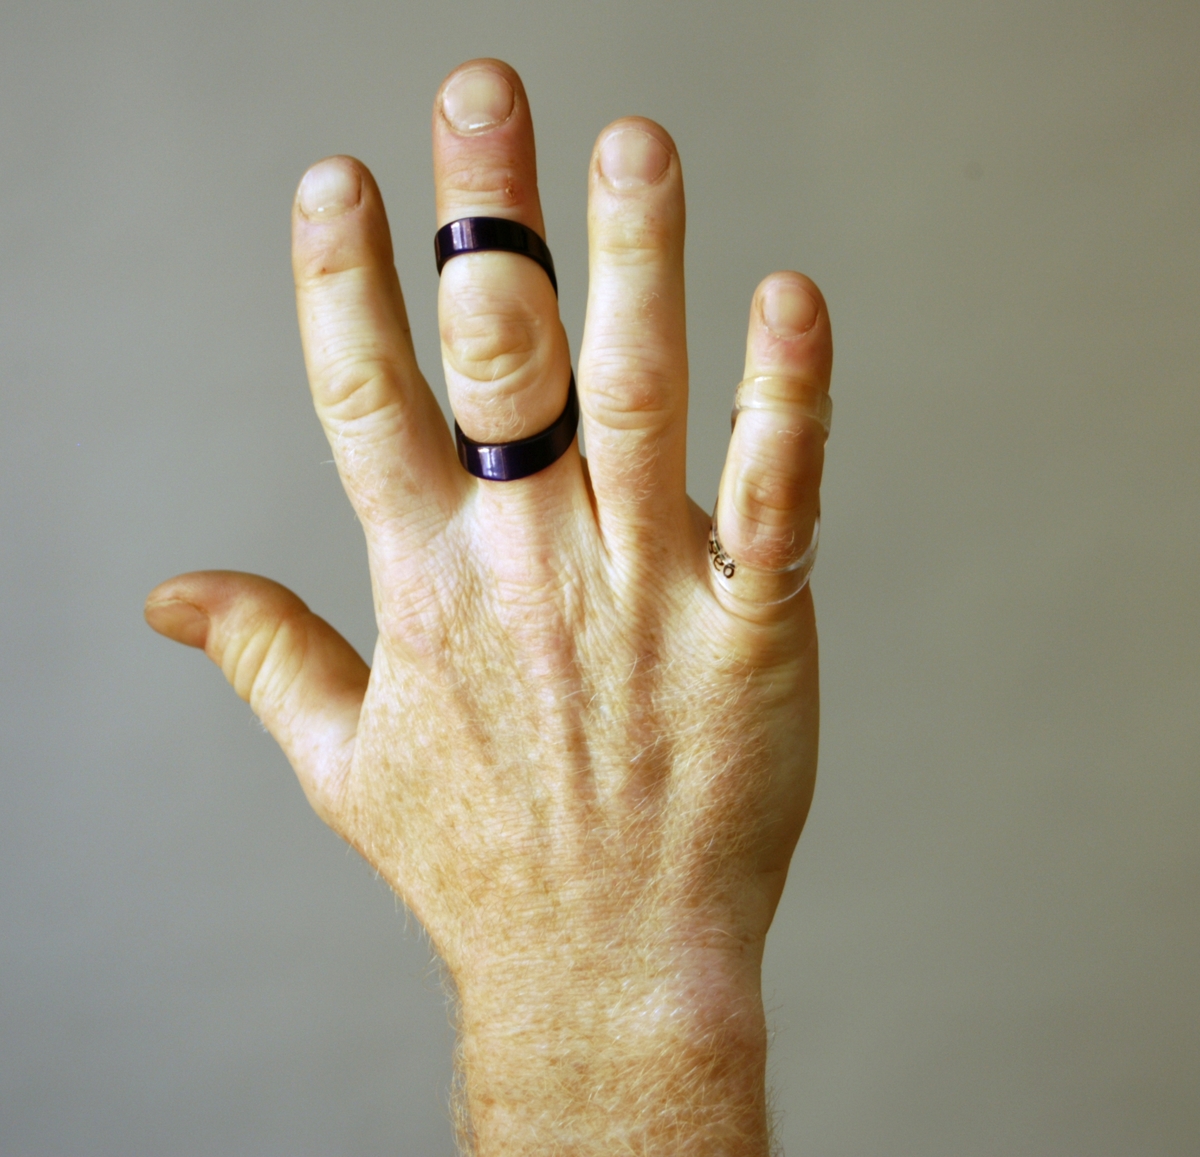 Fingerfärdig är en ring och samtidigt ett hjälpmedel. Ett fingerstöd som stabiliserar fingret allmänt vid ledsvaghet och motverkar "svanhalsdeformitet" som kan utvecklas vid kronisk reumatism. Fingerfärdig är registrerad som varumärke och finns i tre olika material: guld, silver samt plast i olika färger.